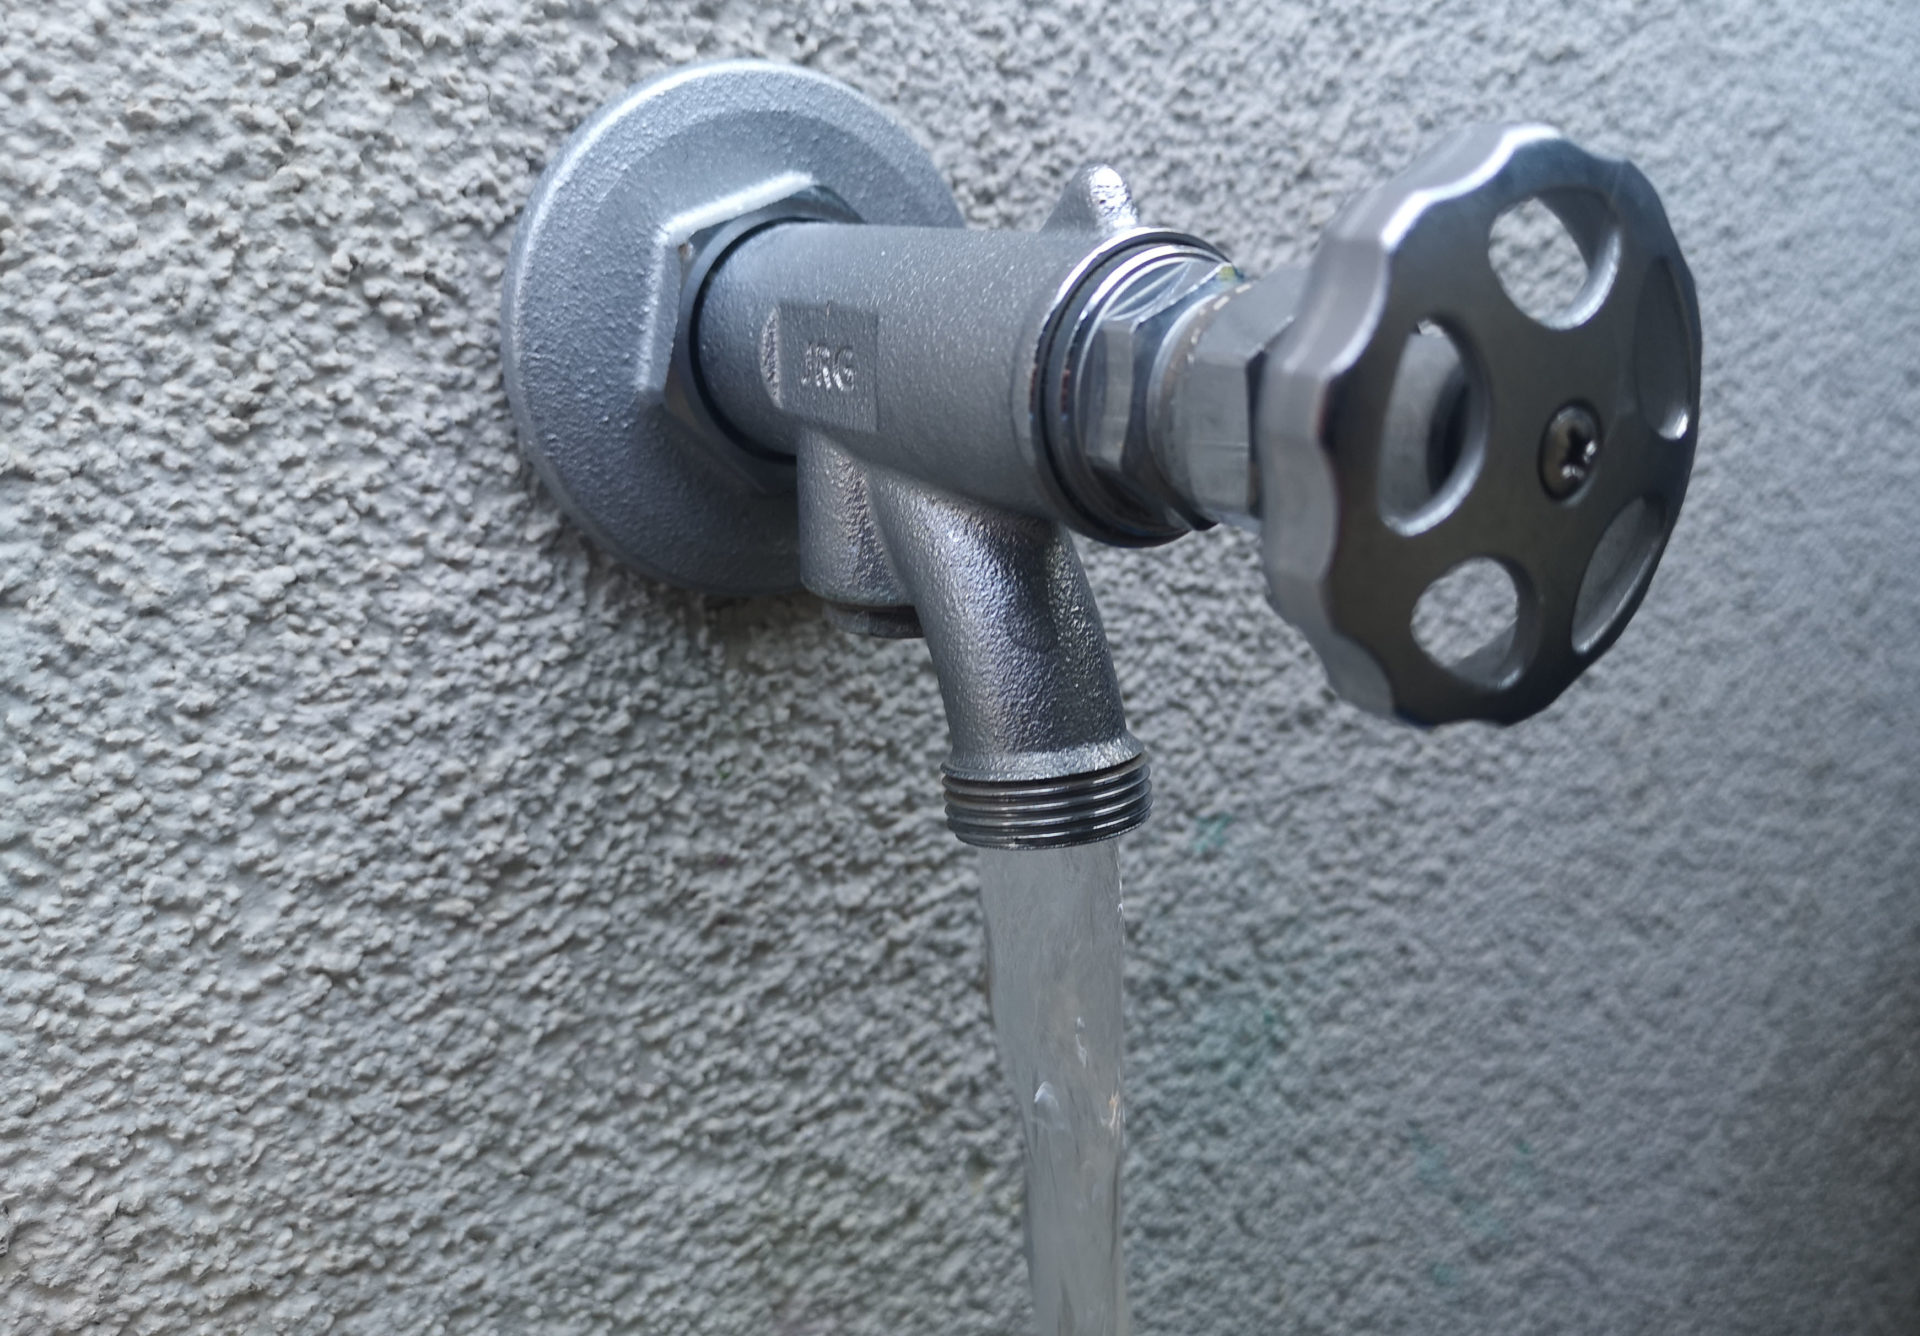 Trinkwasserschutz bei Verwendung eines Außenwasserhahnes bzw. Nutzung einer Zisterne